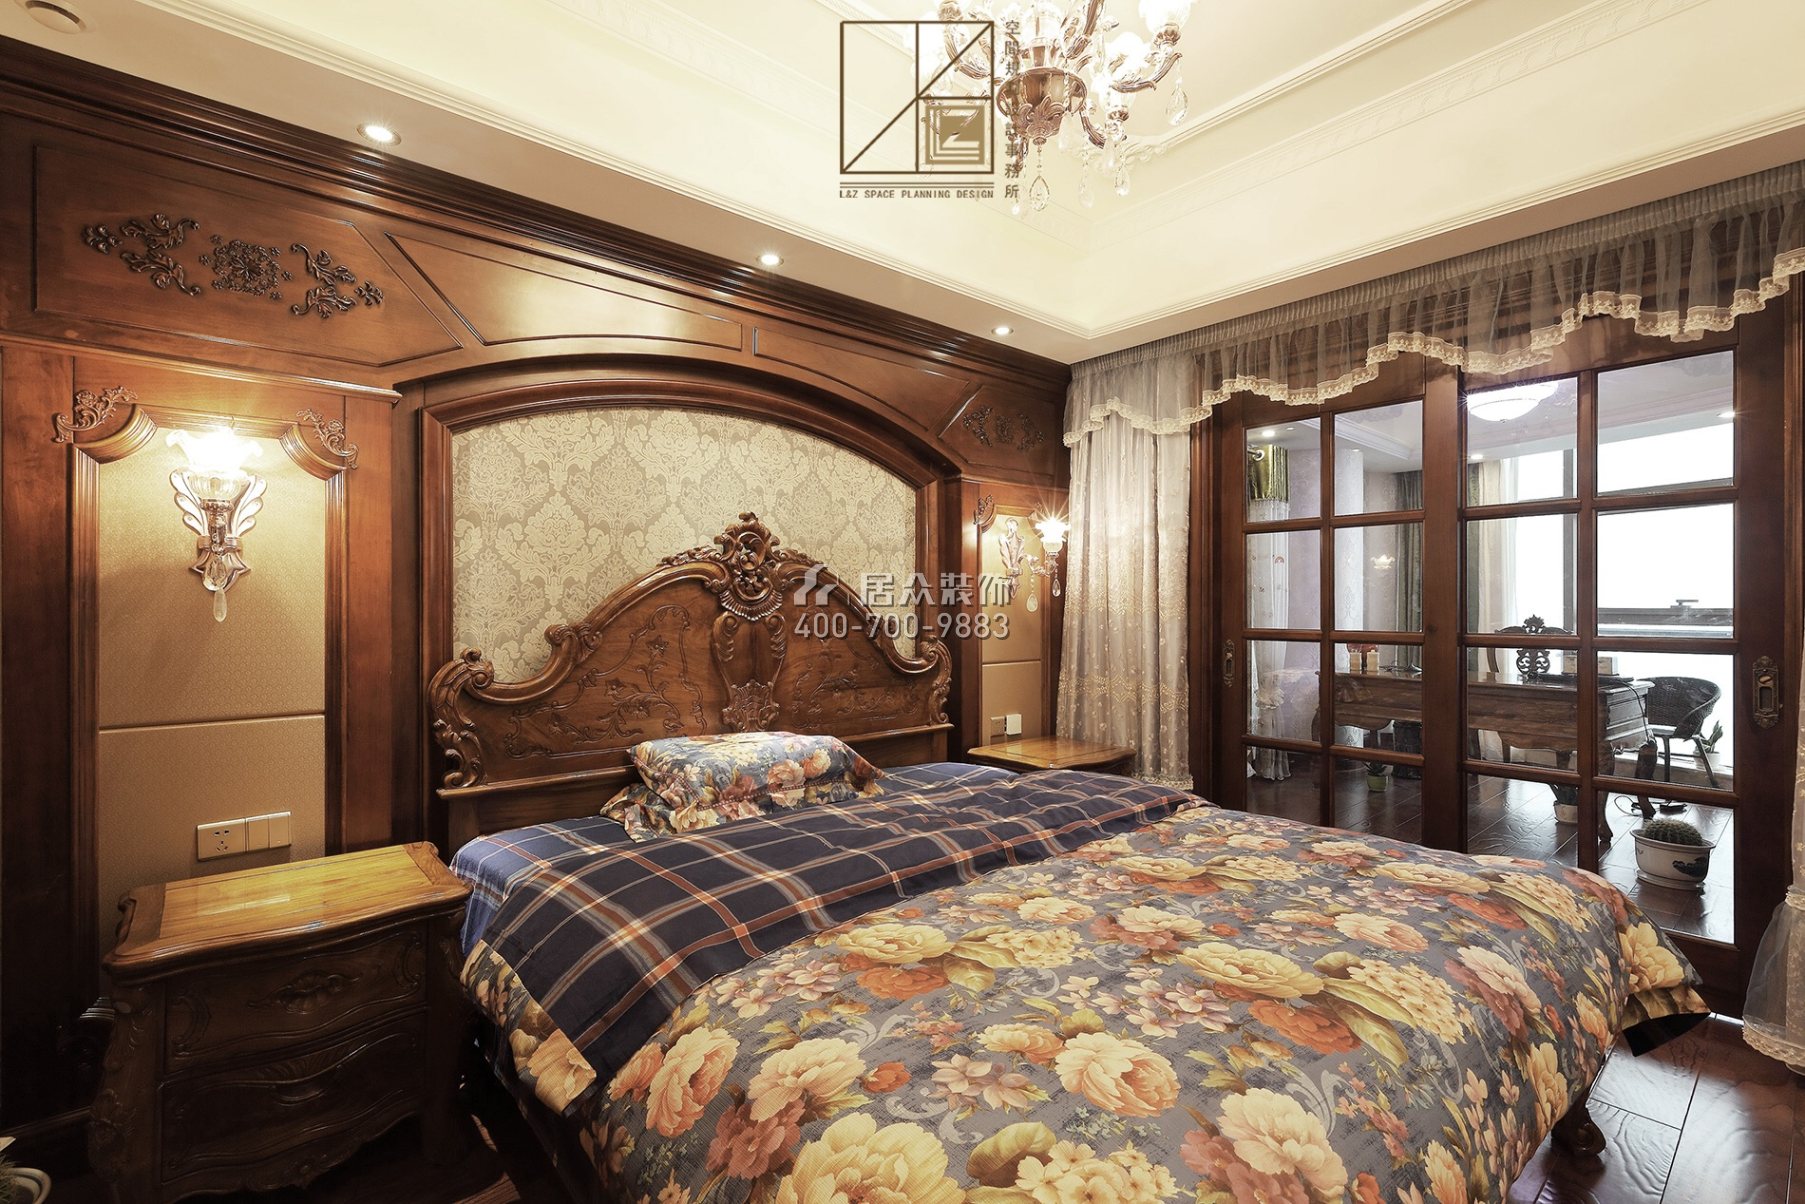 富湾国际720平方米美式风格复式户型卧室书房一体装修效果图